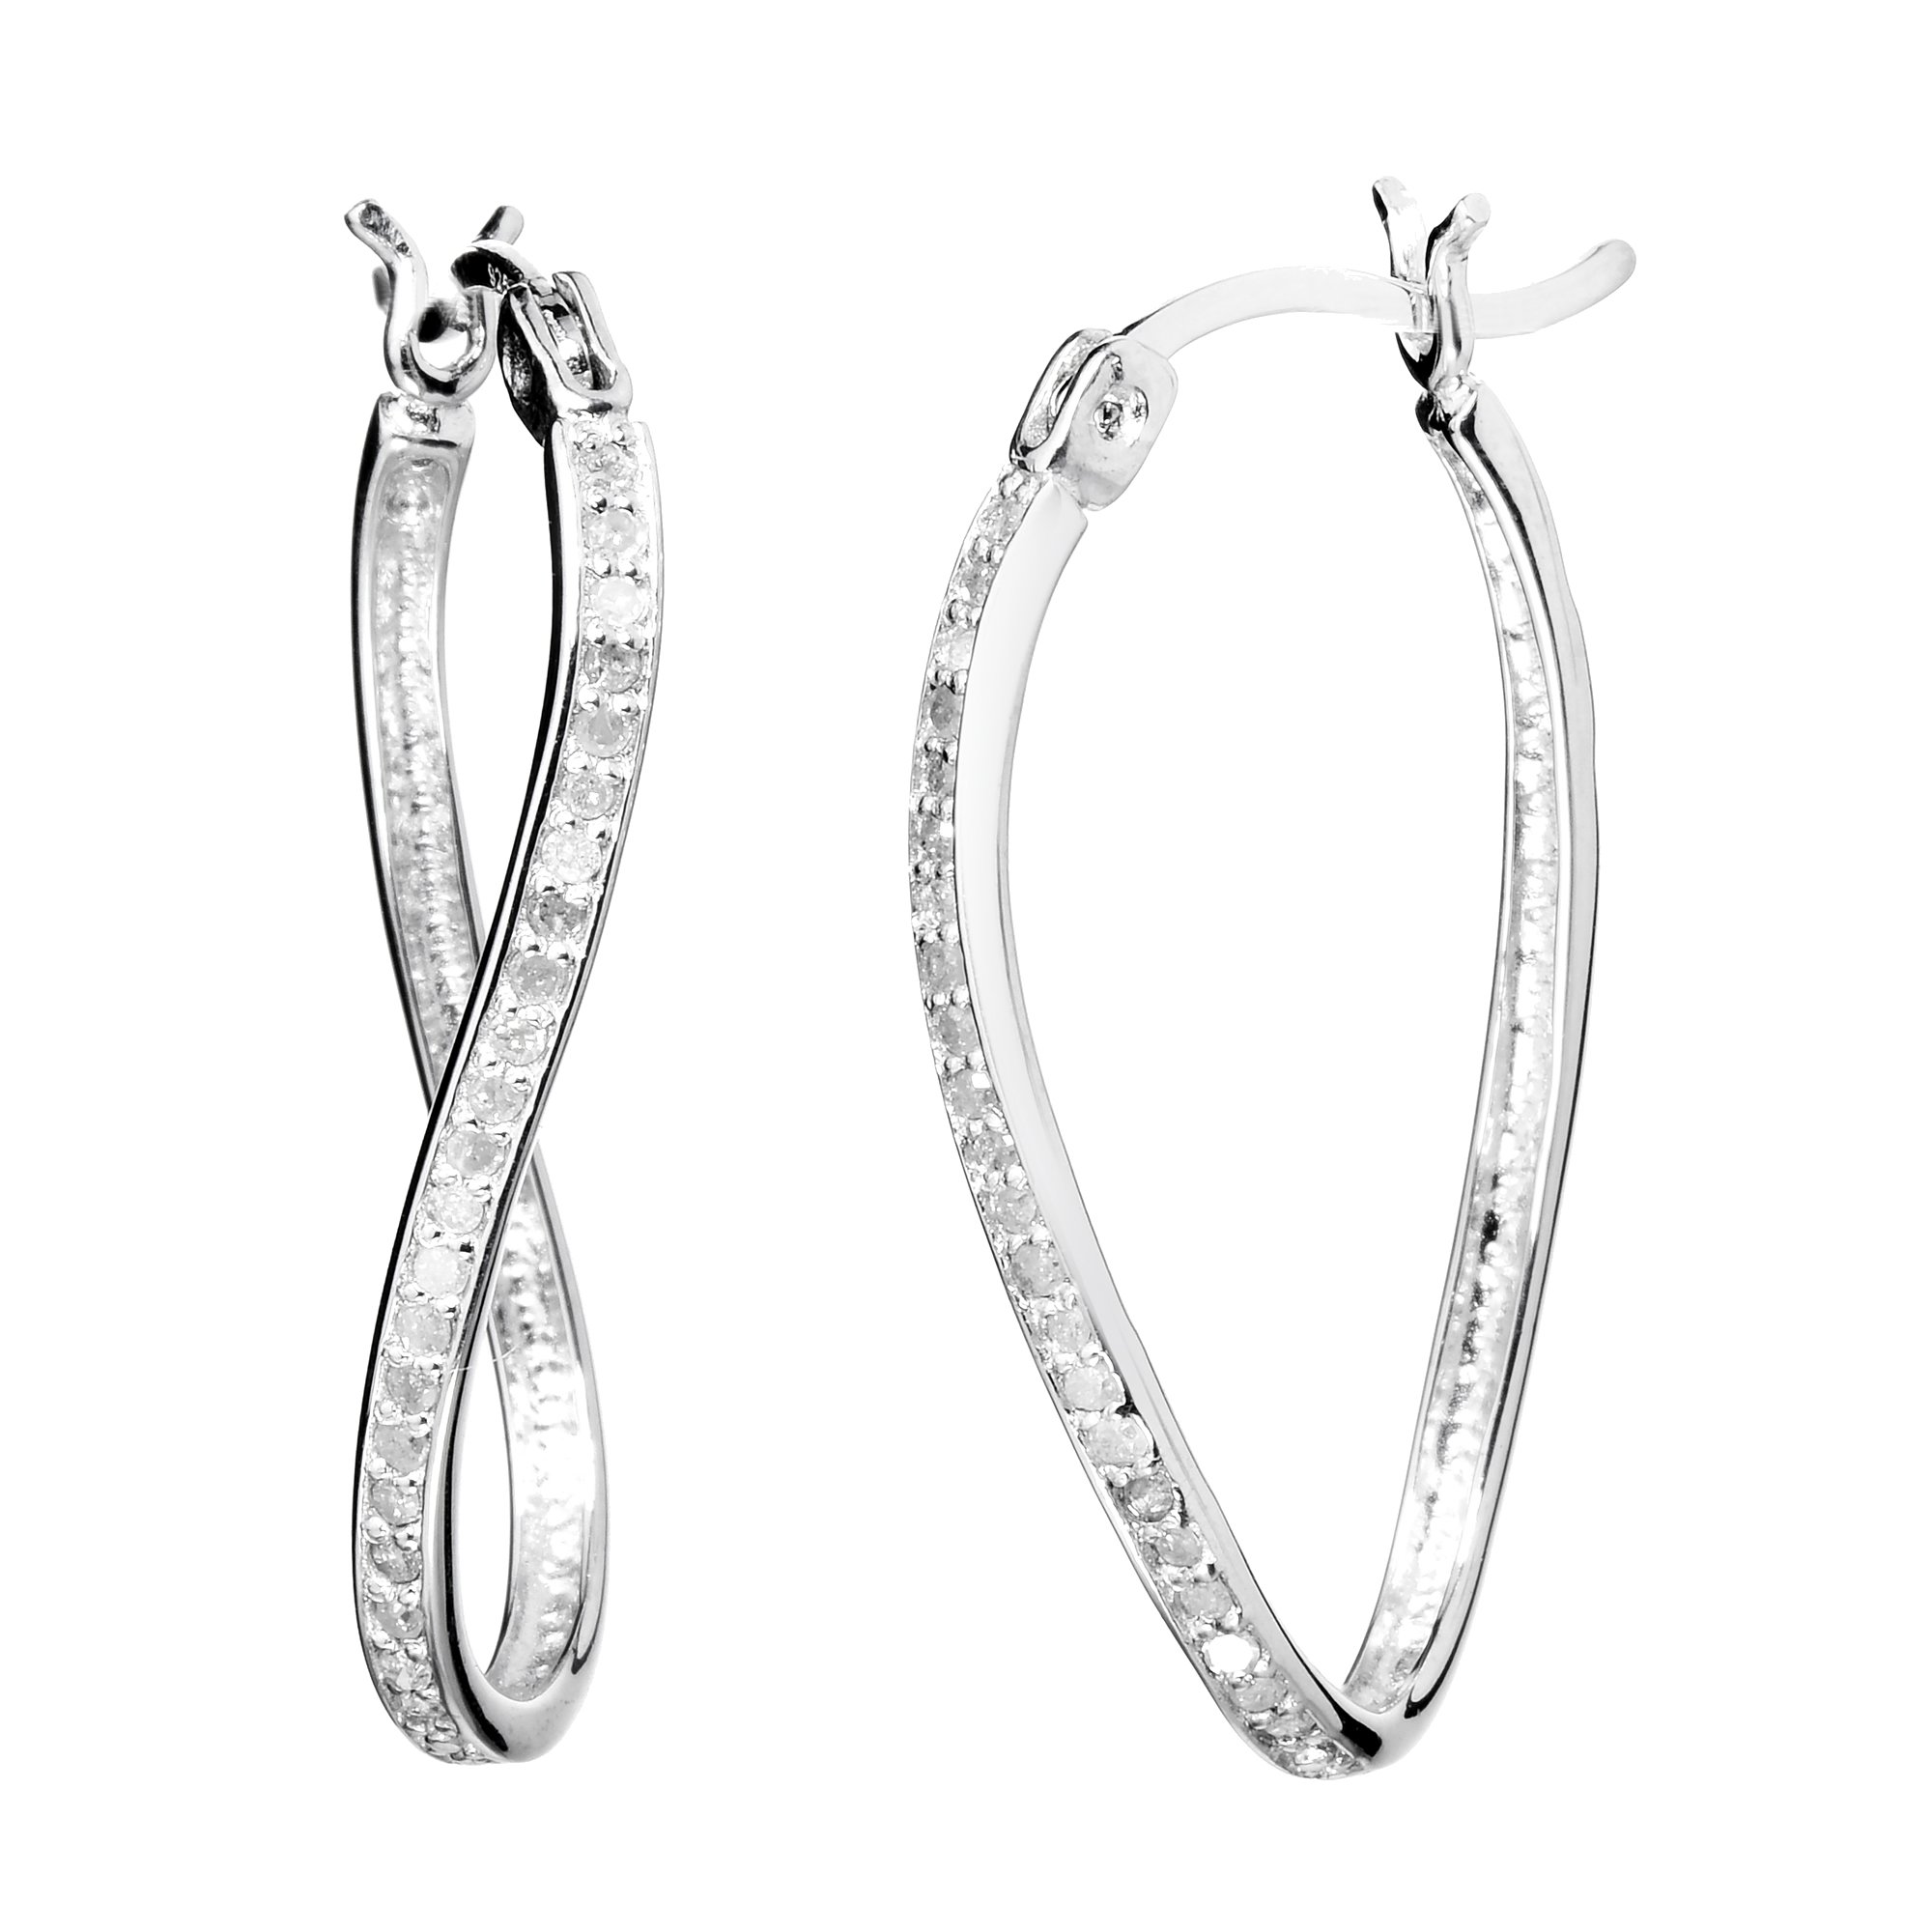 Vir Jewels 1/4 cttw Diamond Hoop Earrings .925 Sterling Silver with Rhodium Plating 1 Inch